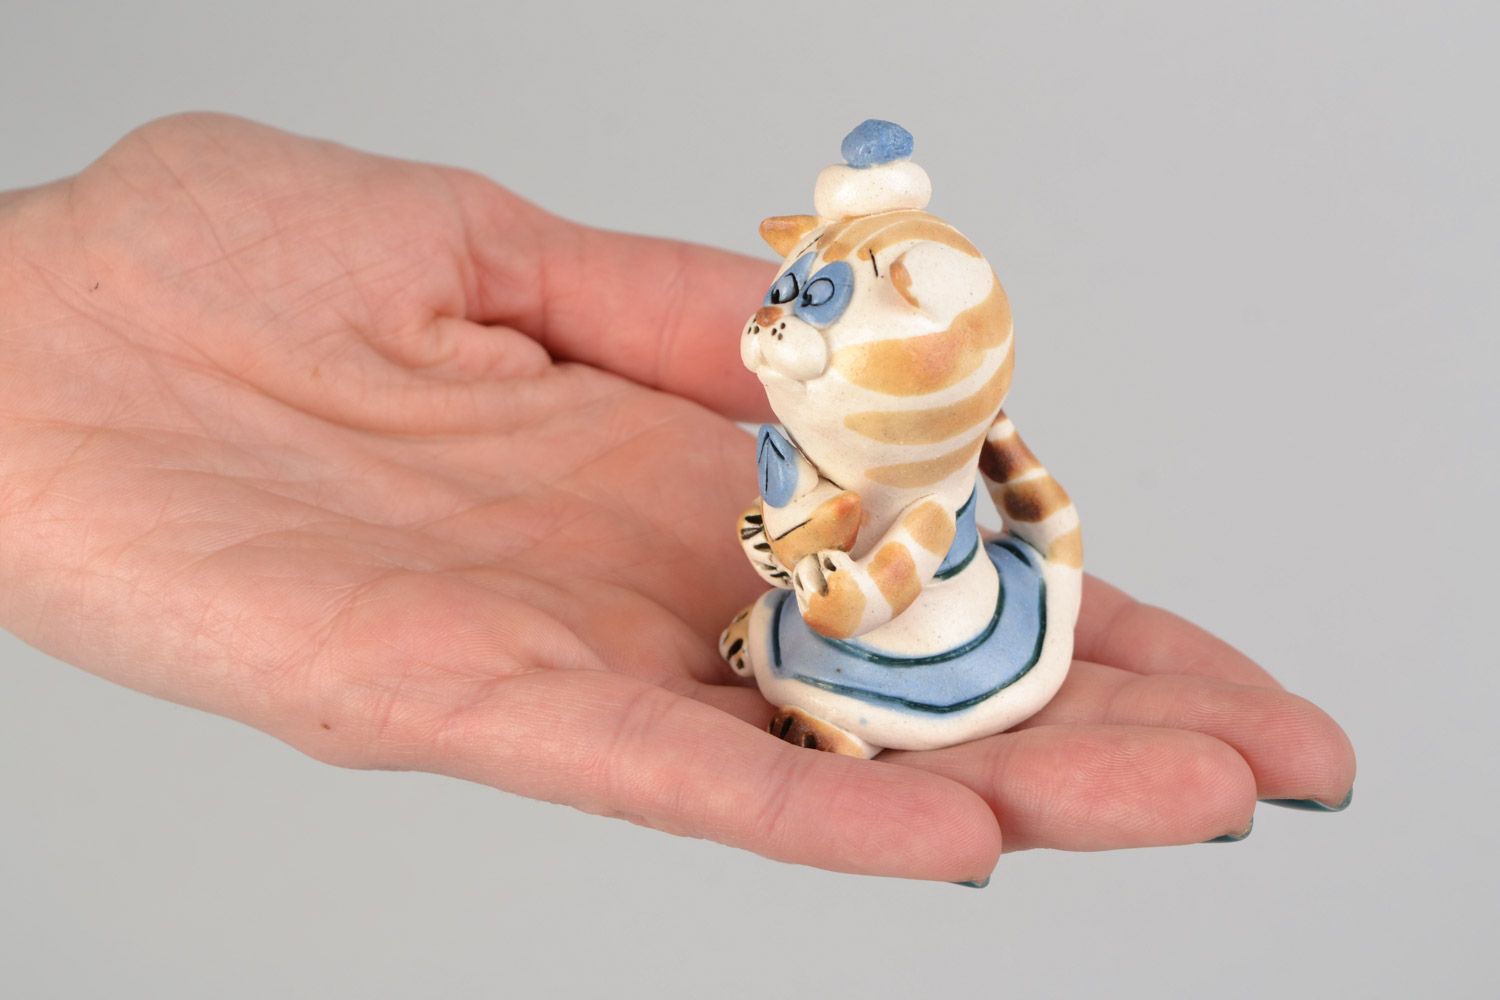 Авторская расписанная глазурью глиняная фигурка кошки кокетки ручной работы фото 2